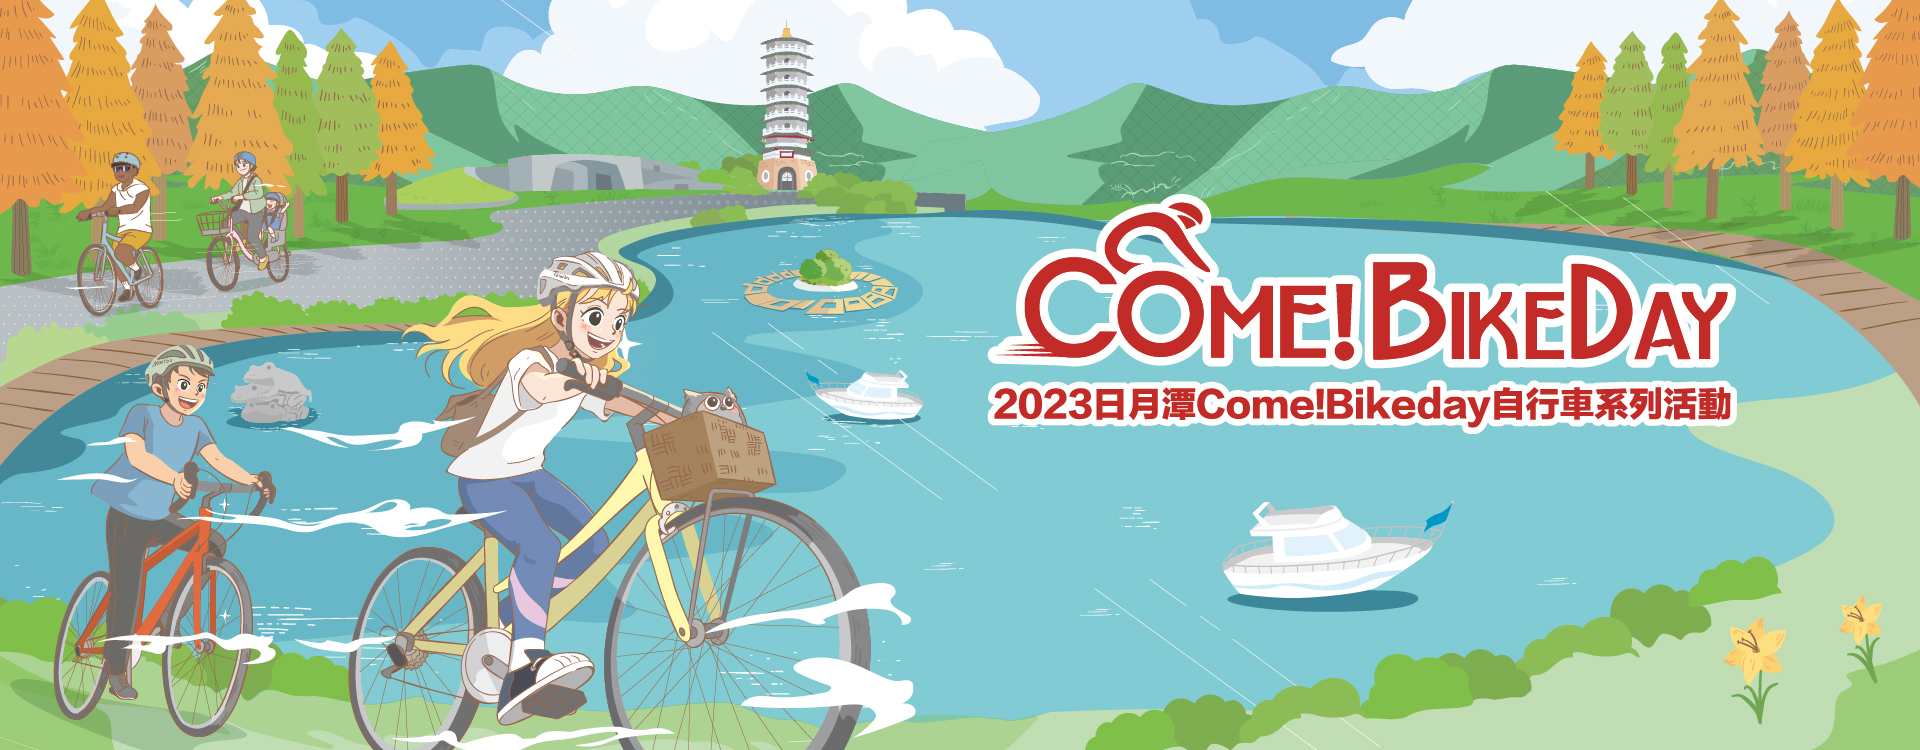 2023 르웨탄 Come!BikeDay 뮤직 & 불꽃 페스티벌